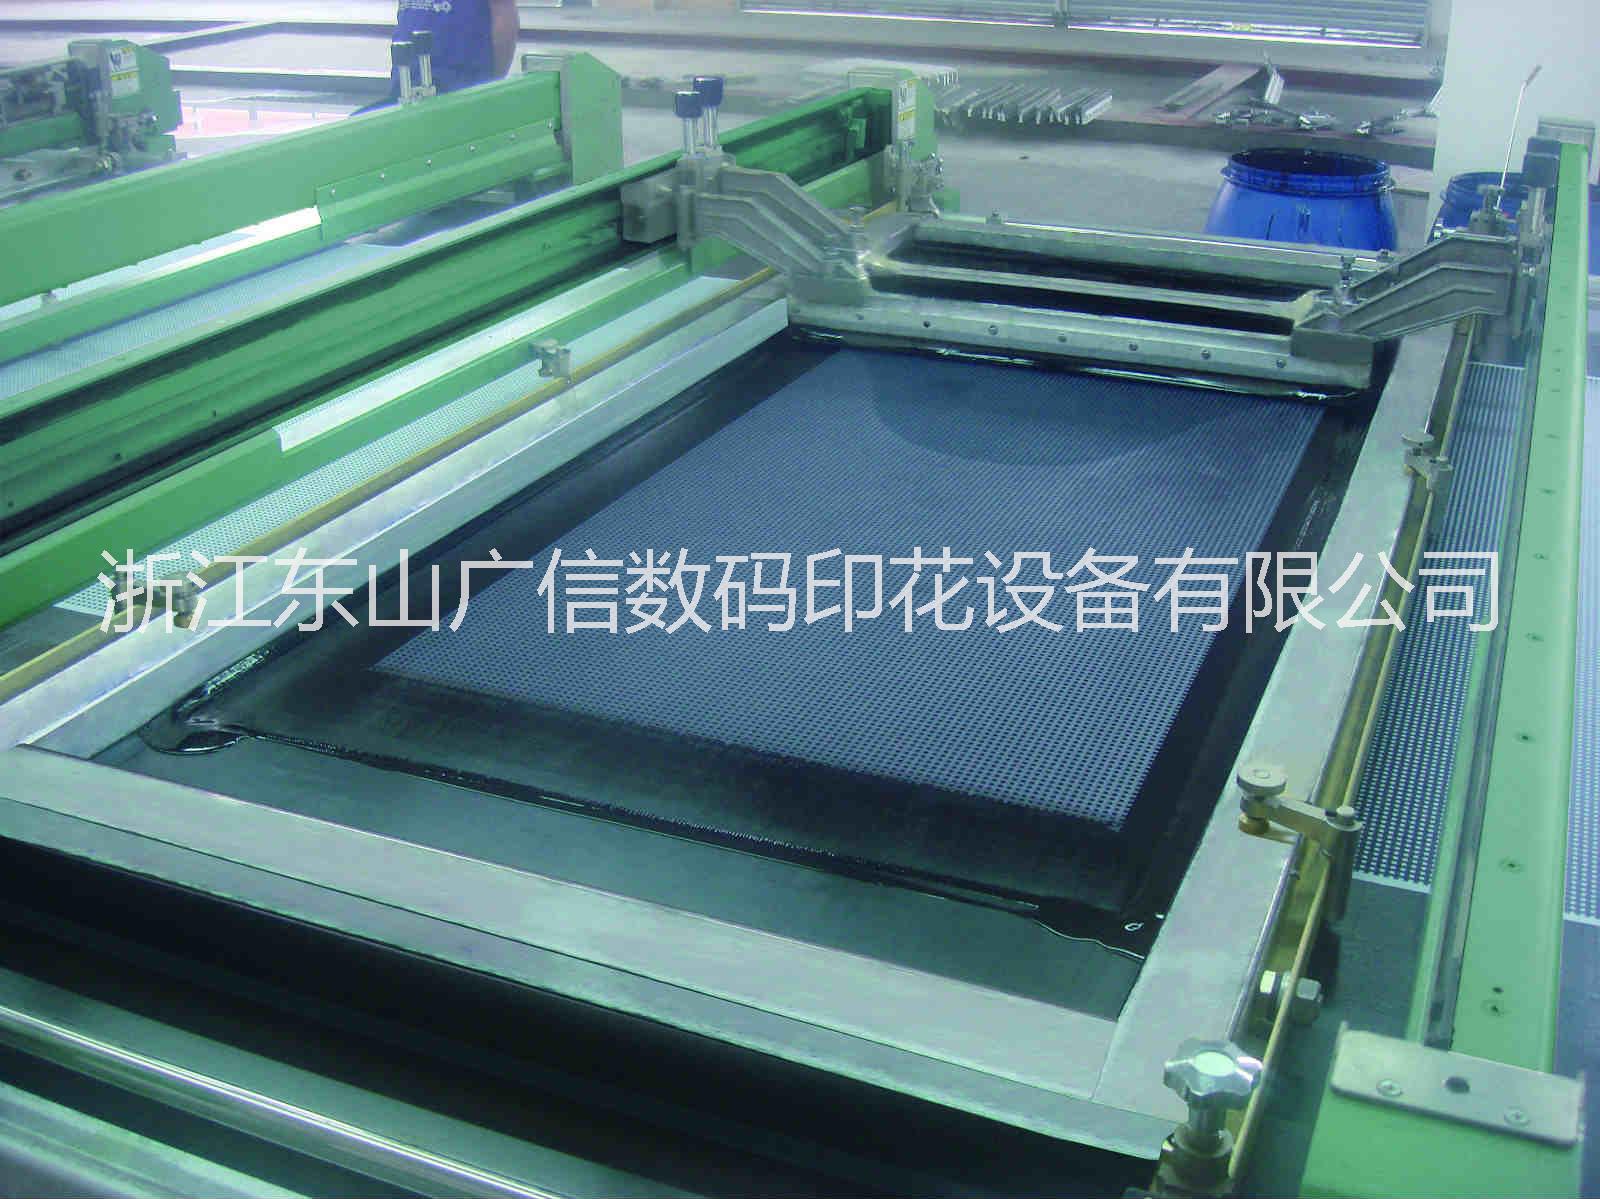 衢州市S9300自动平网印花机厂家